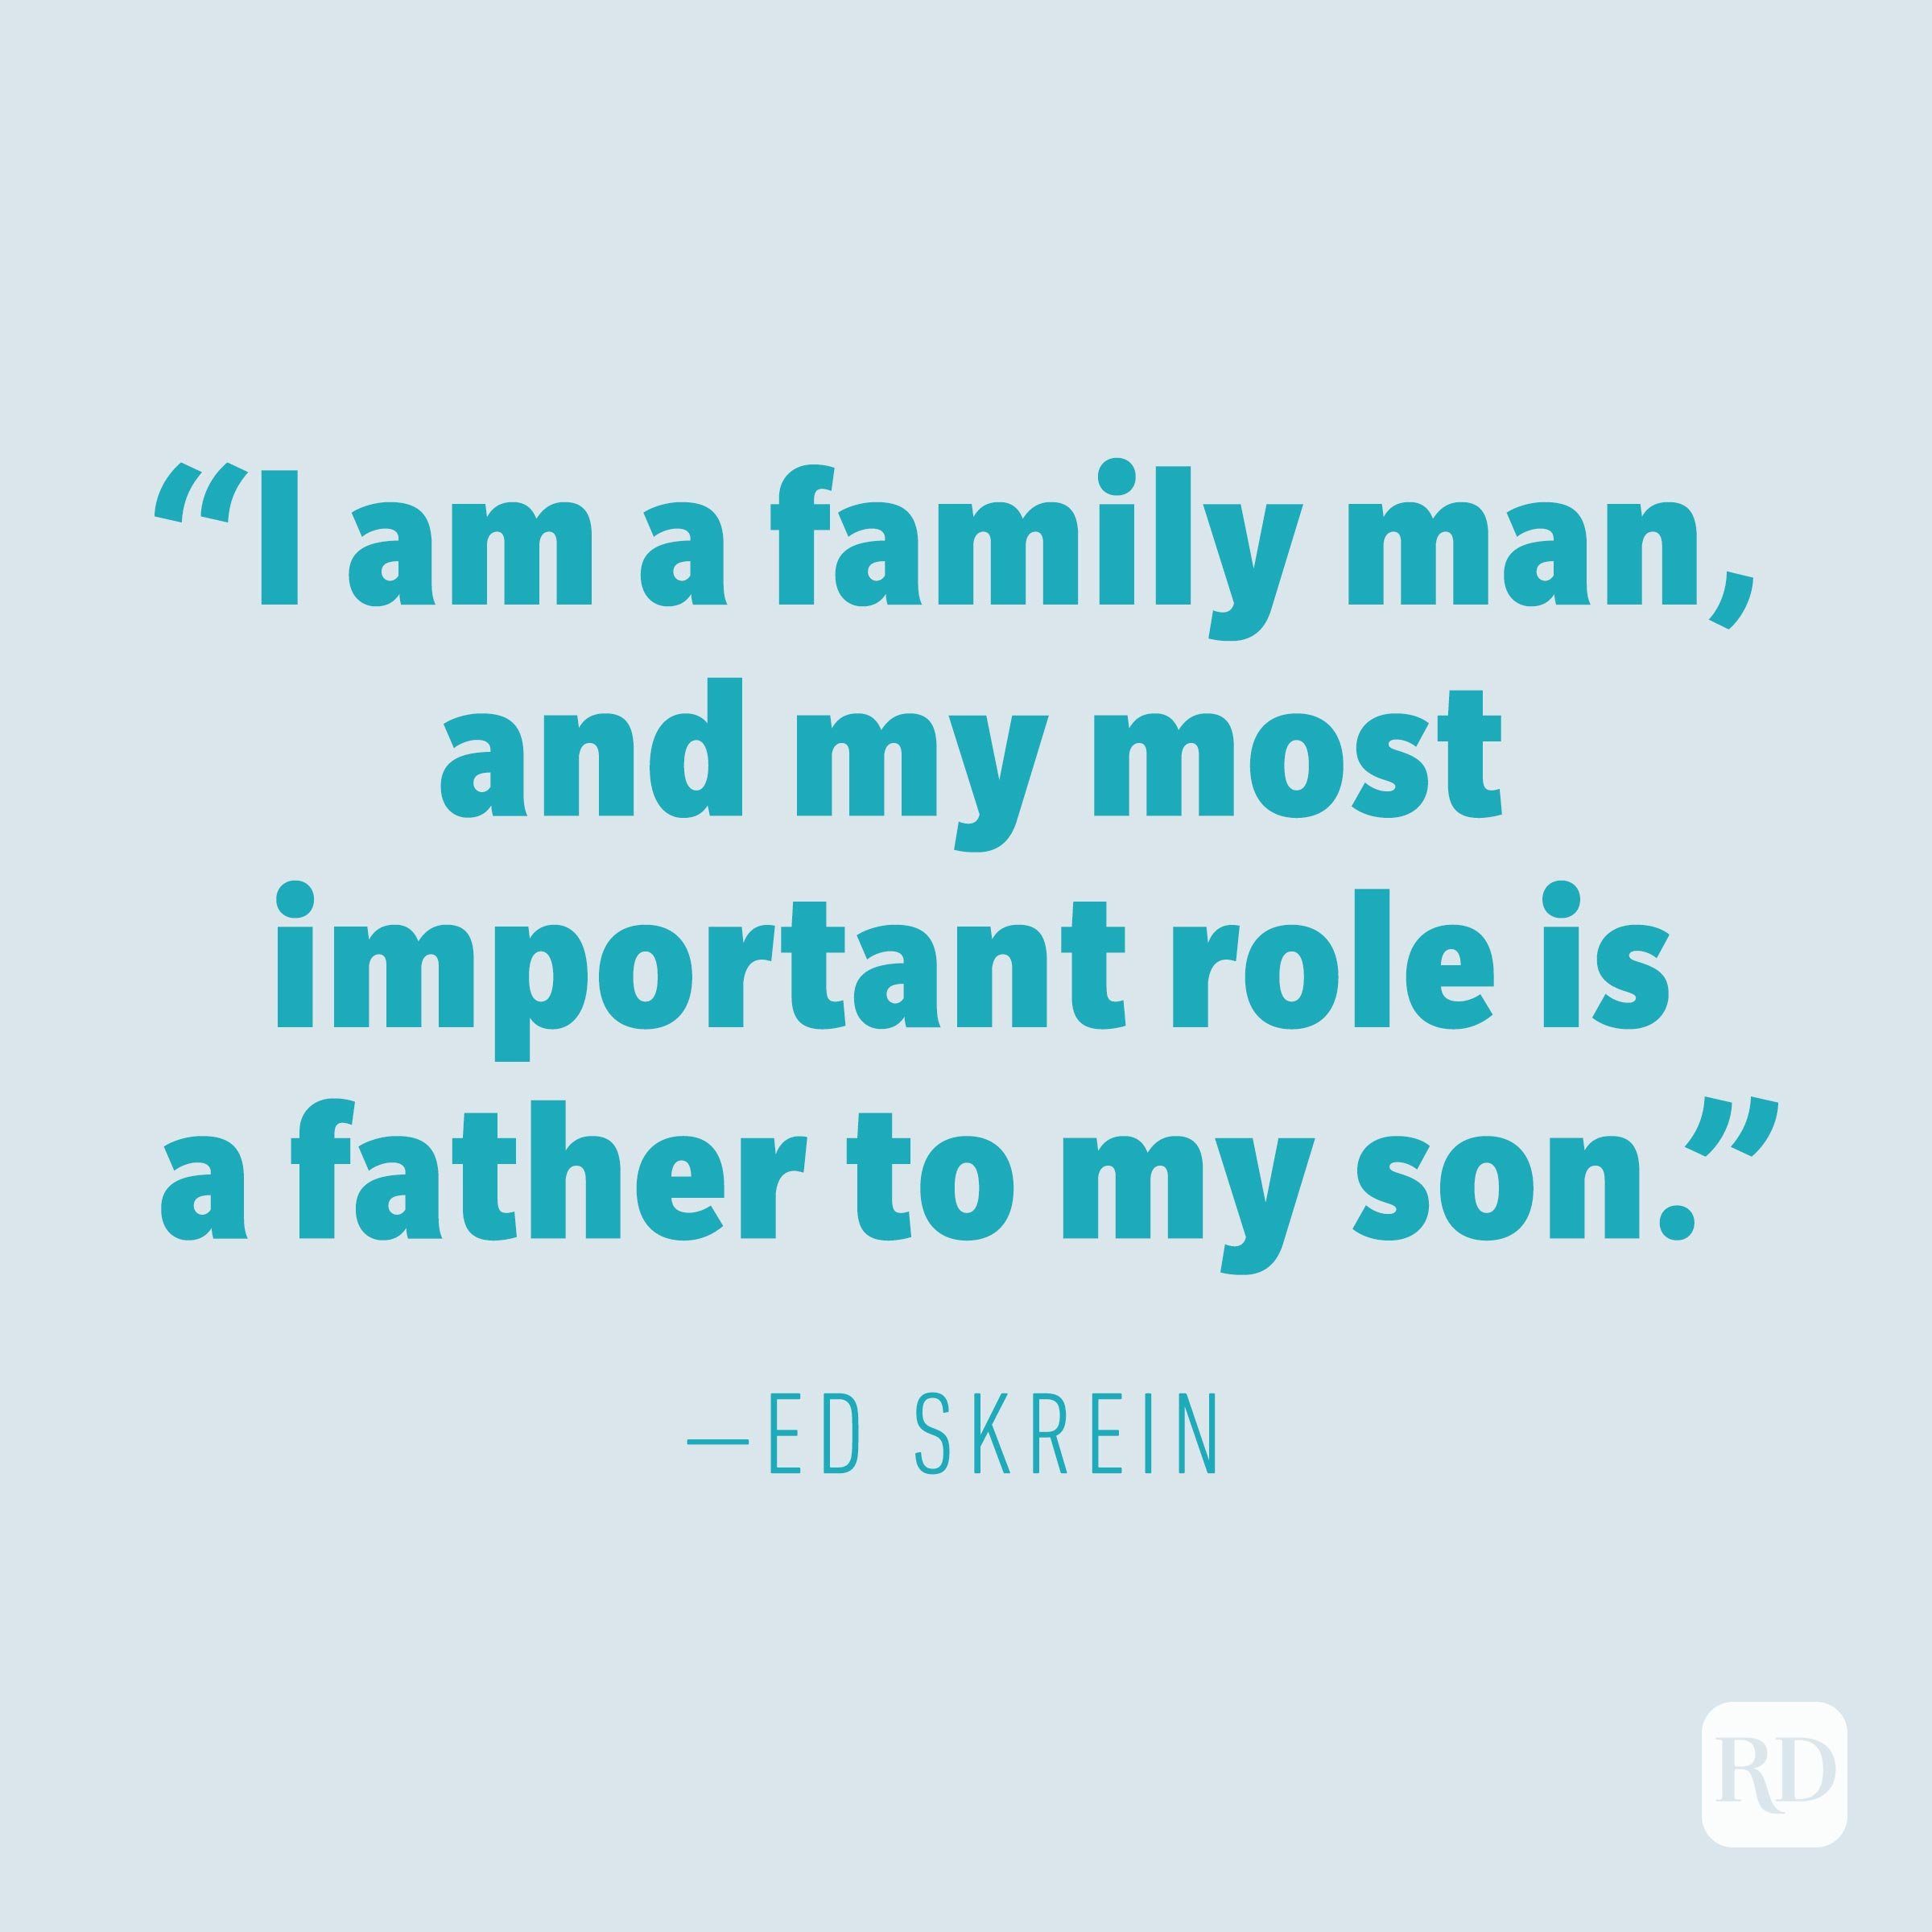 Ed Skrein quote